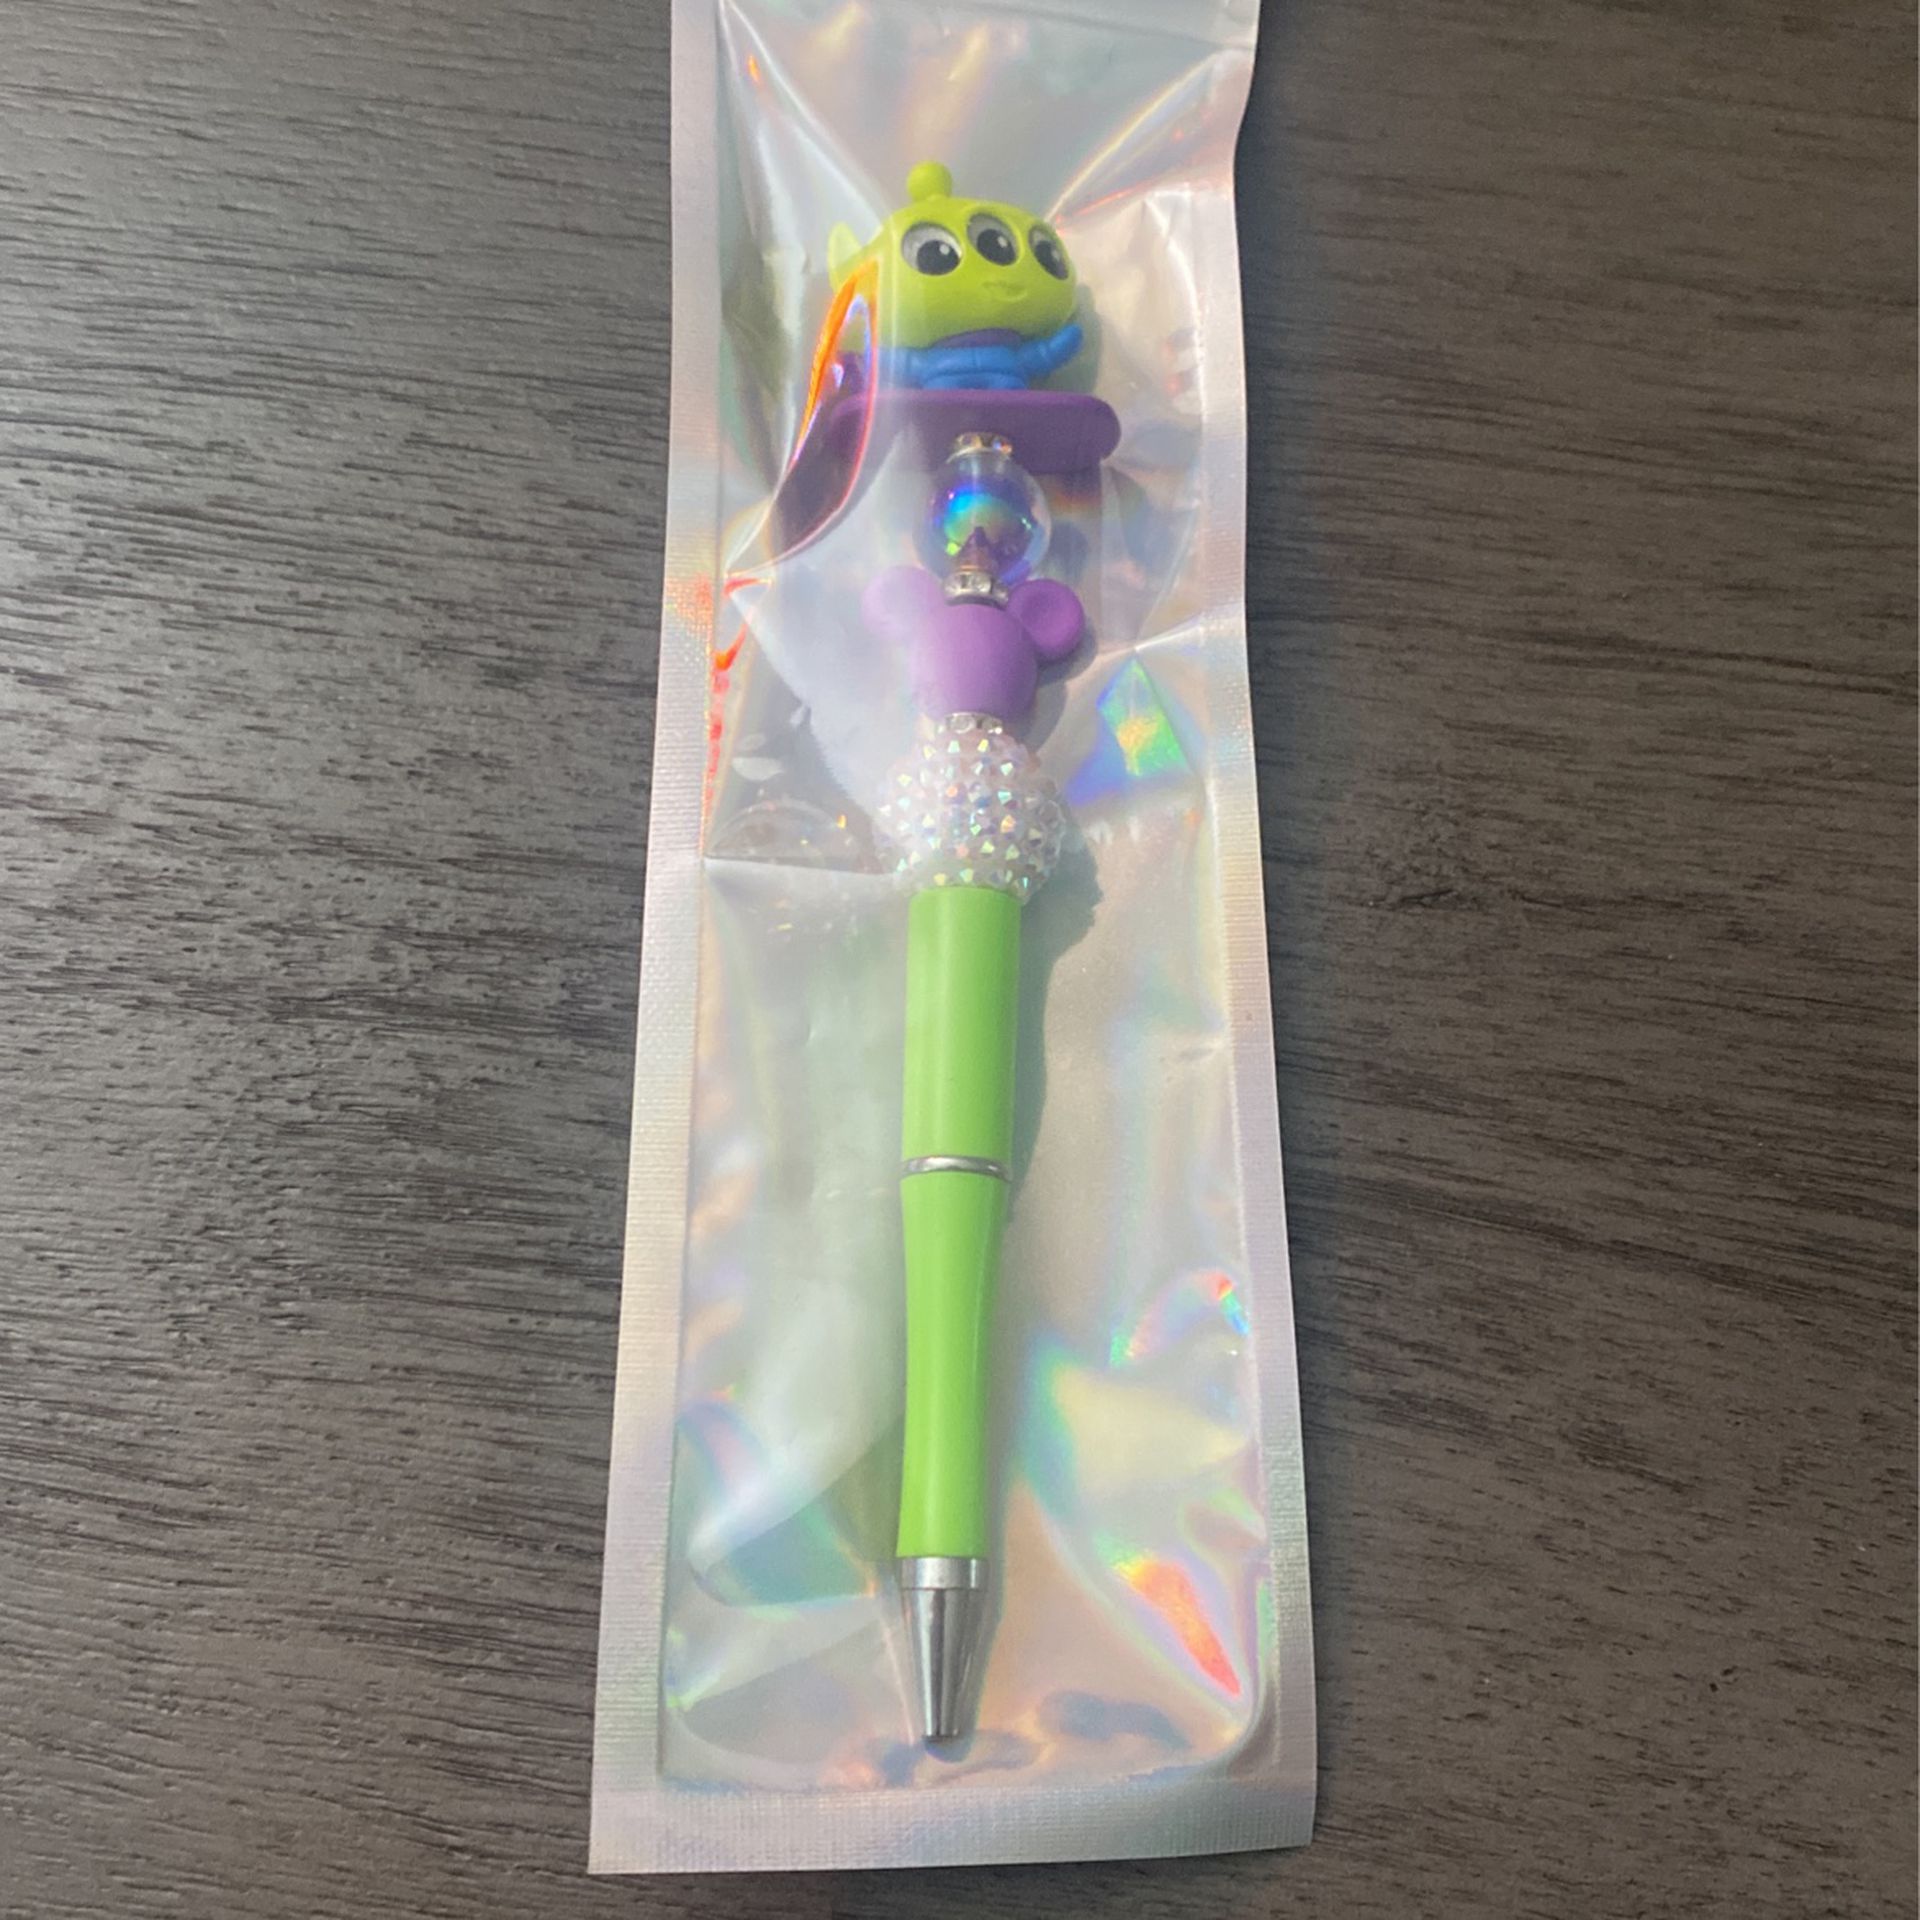 Toy Story Alien Disney Doorable Pen 